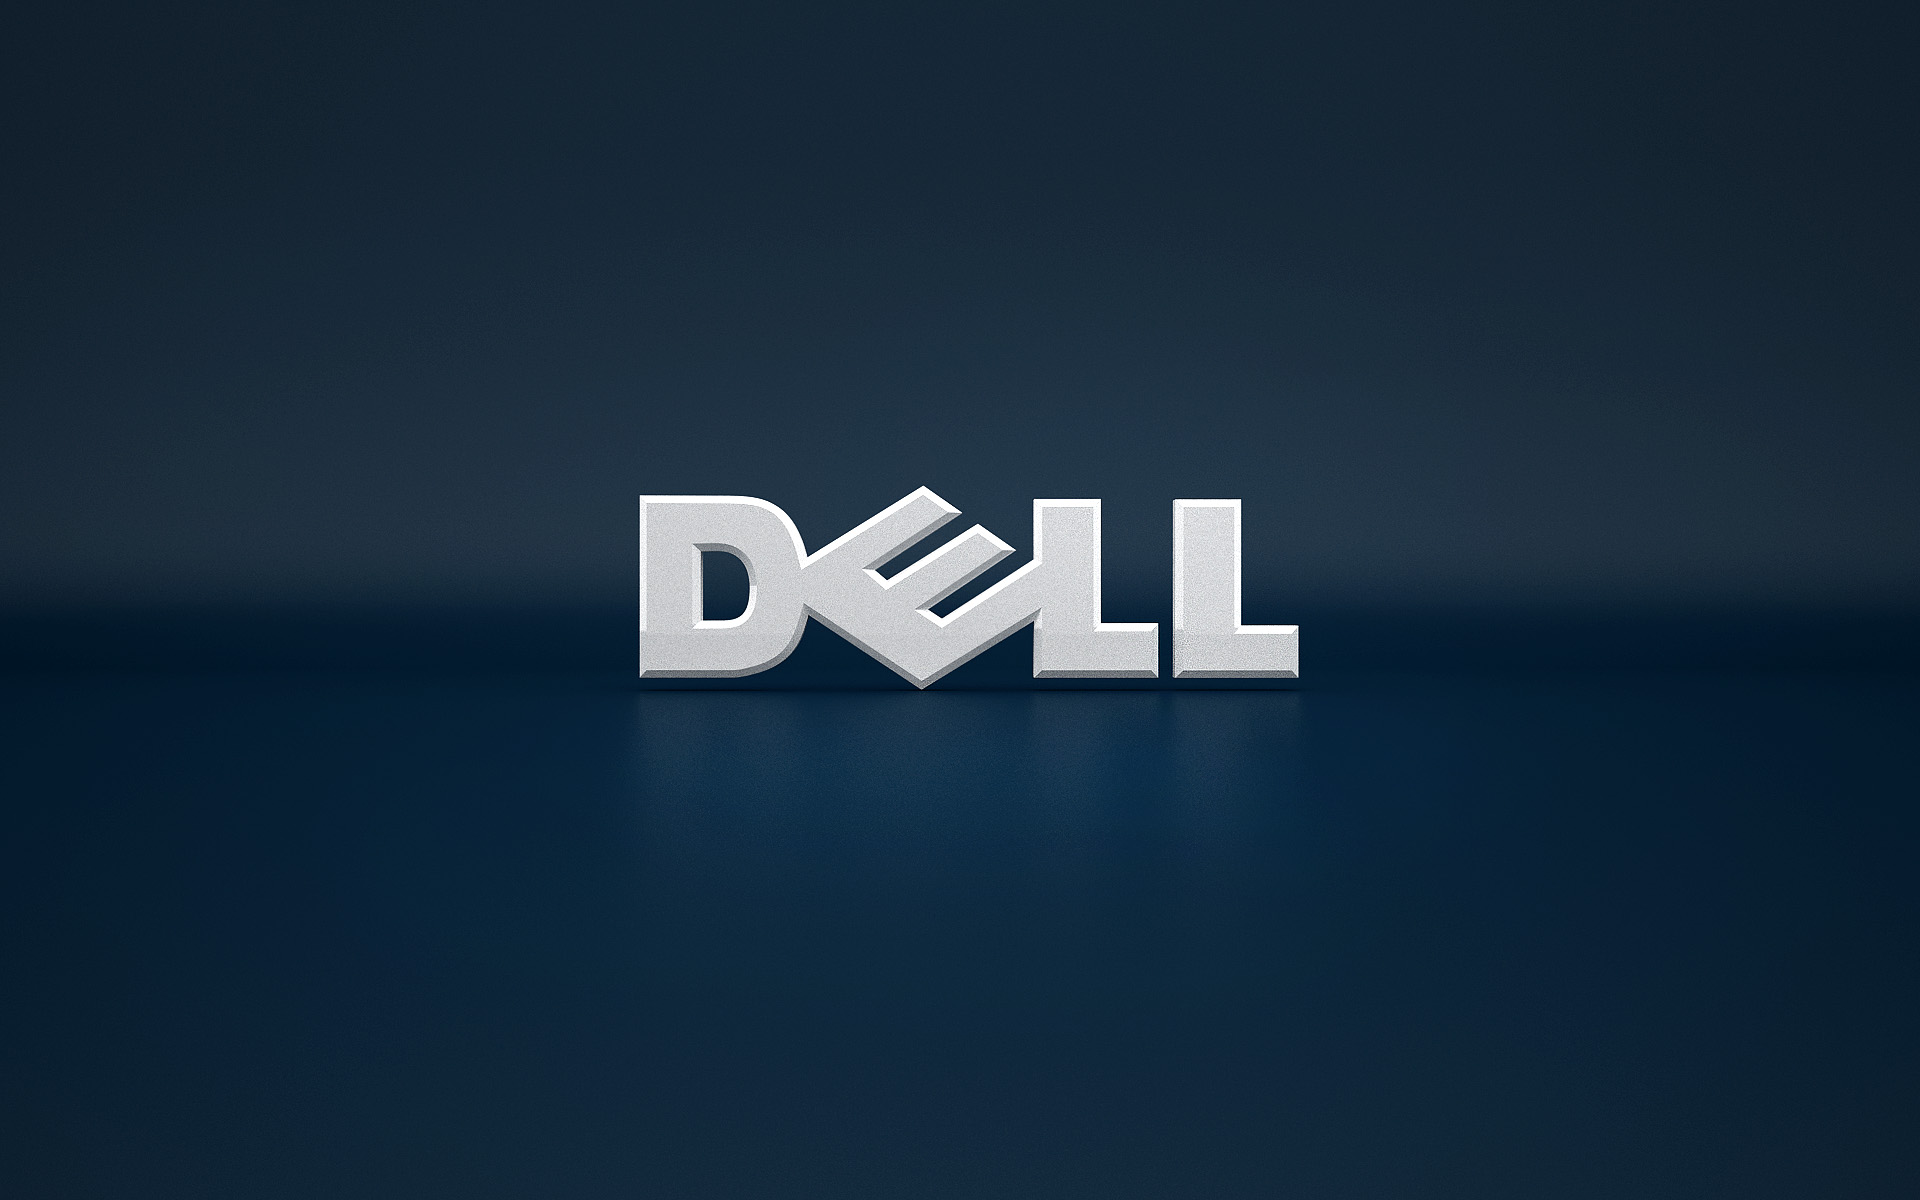 Dell HD wallpaper - Với chất lượng hình ảnh tuyệt vời, hình nền Dell HD sẽ khiến cho máy tính của bạn trở nên hoàn hảo hơn bao giờ hết. Khám phá hàng ngàn lựa chọn để cập nhật cho máy tính của bạn. Hãy xem hình ảnh để tìm kiếm những đồ họa đẹp nhất.